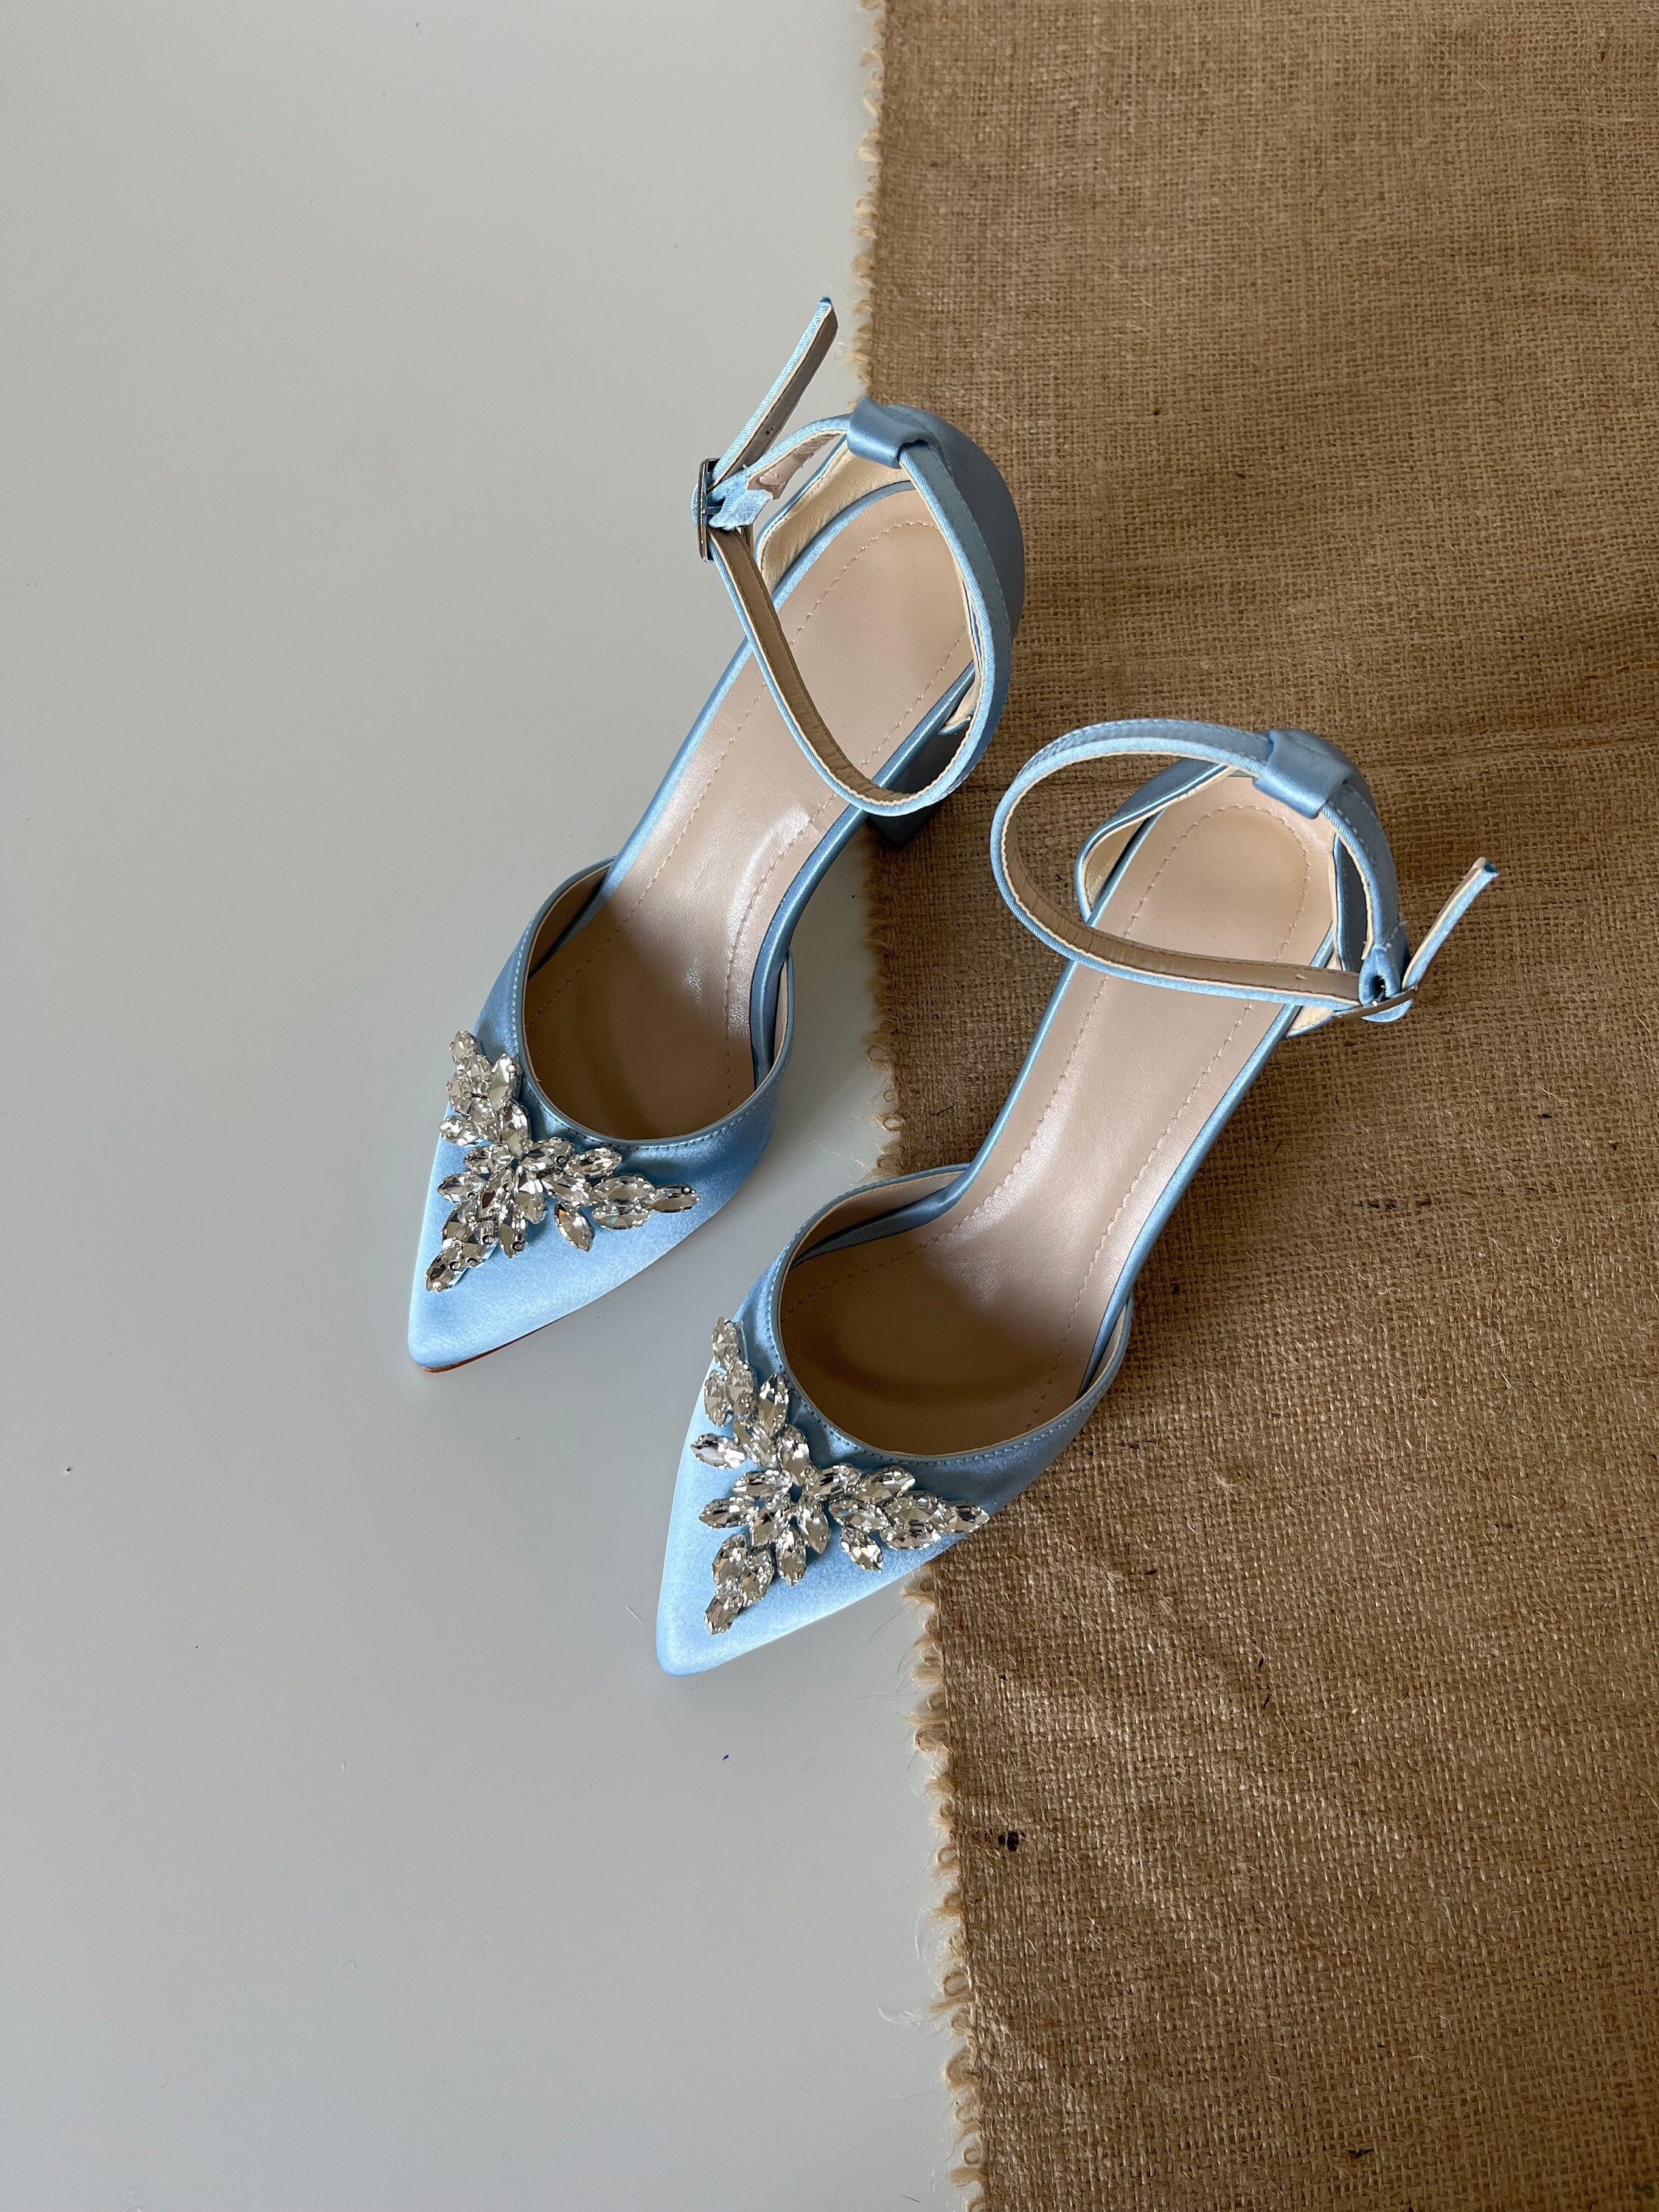 Zara Blue Satin Crystal Embellished Sling Back Heels US Size 7.5 New | eBay